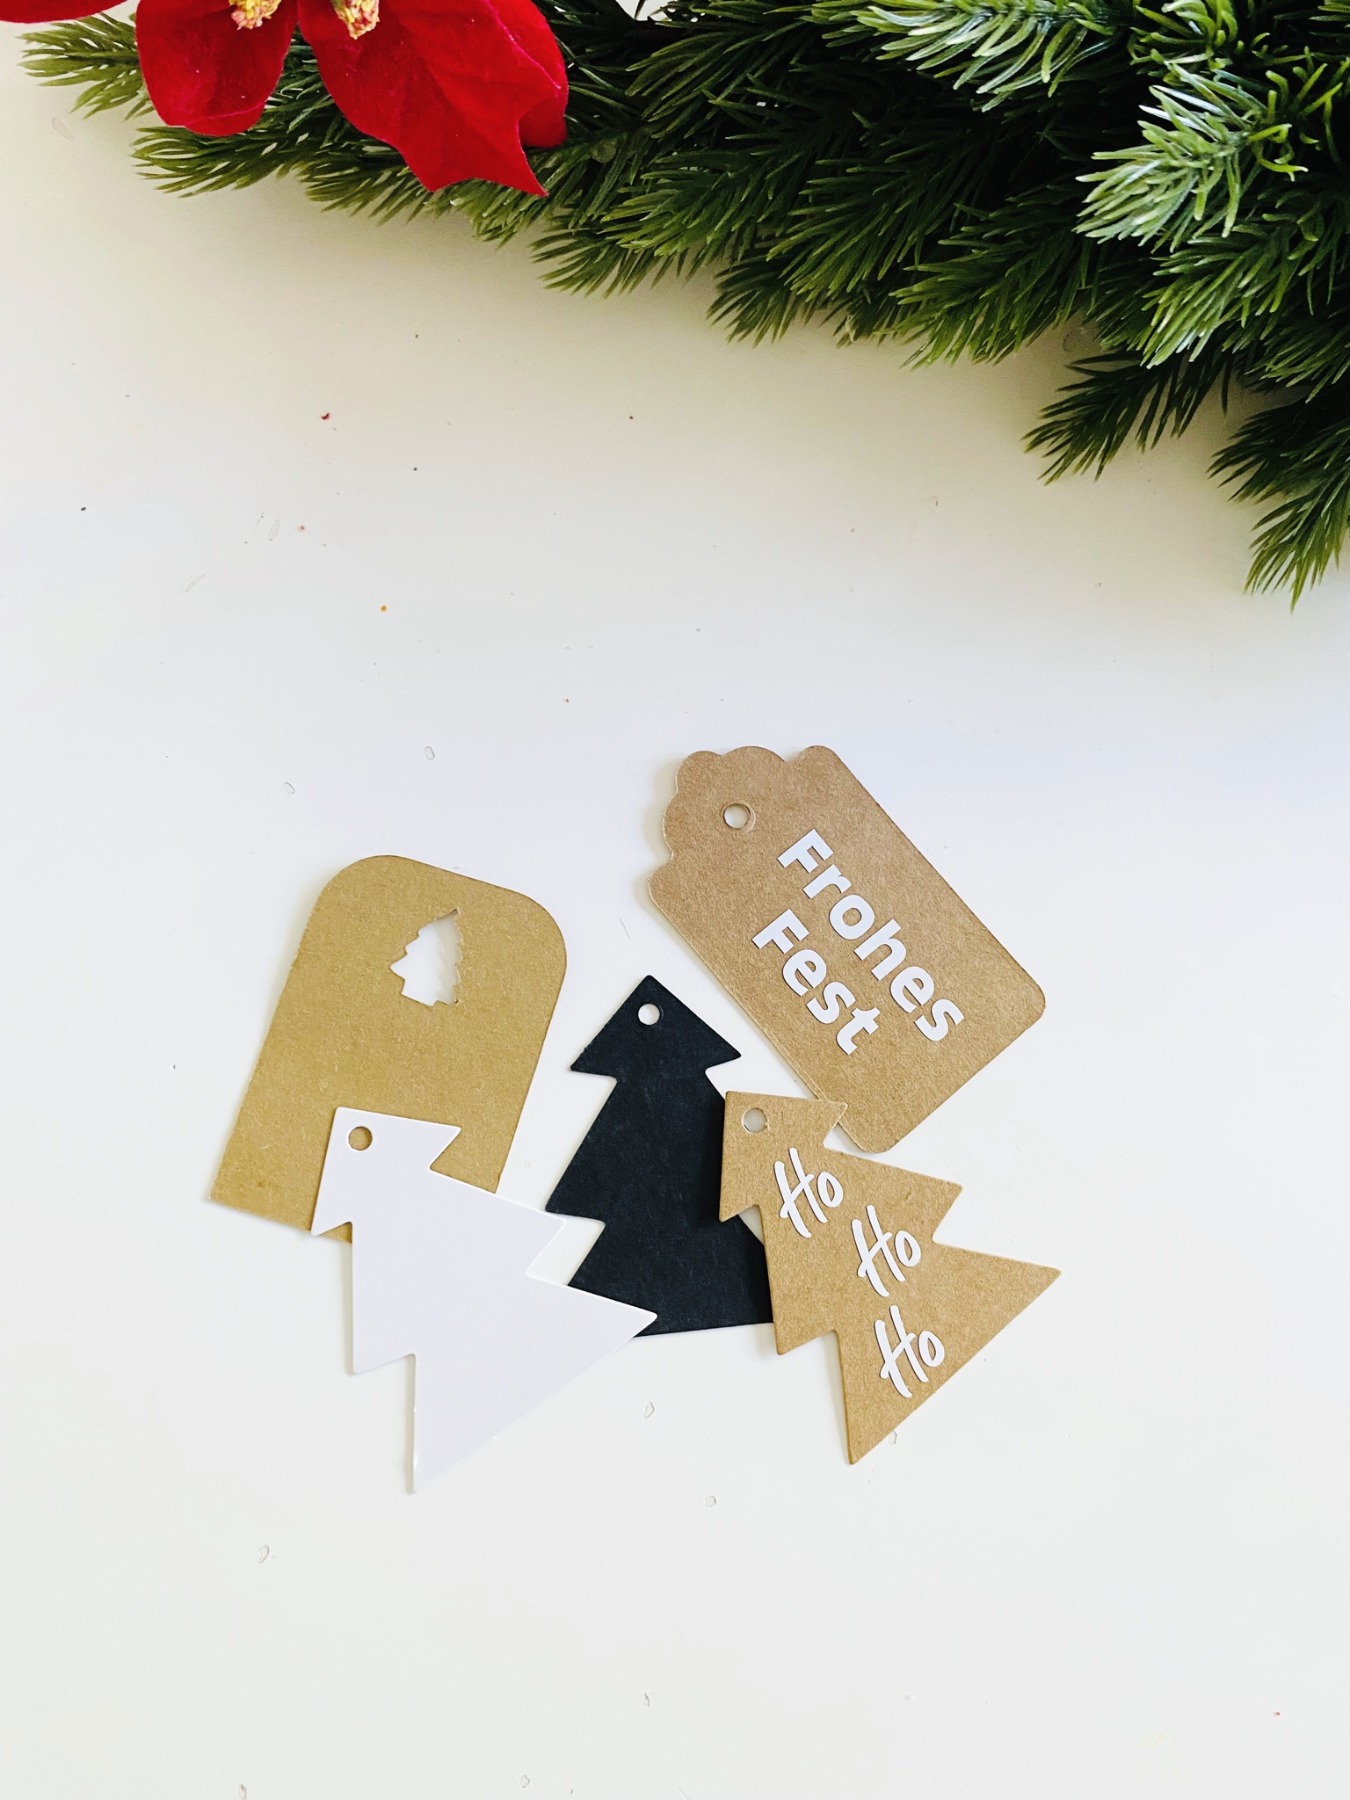 Bastelset für Weihnachten DIY Kit Weihnachtskarten basteln Weihnachtsgeschenke verpacken Ideen 8